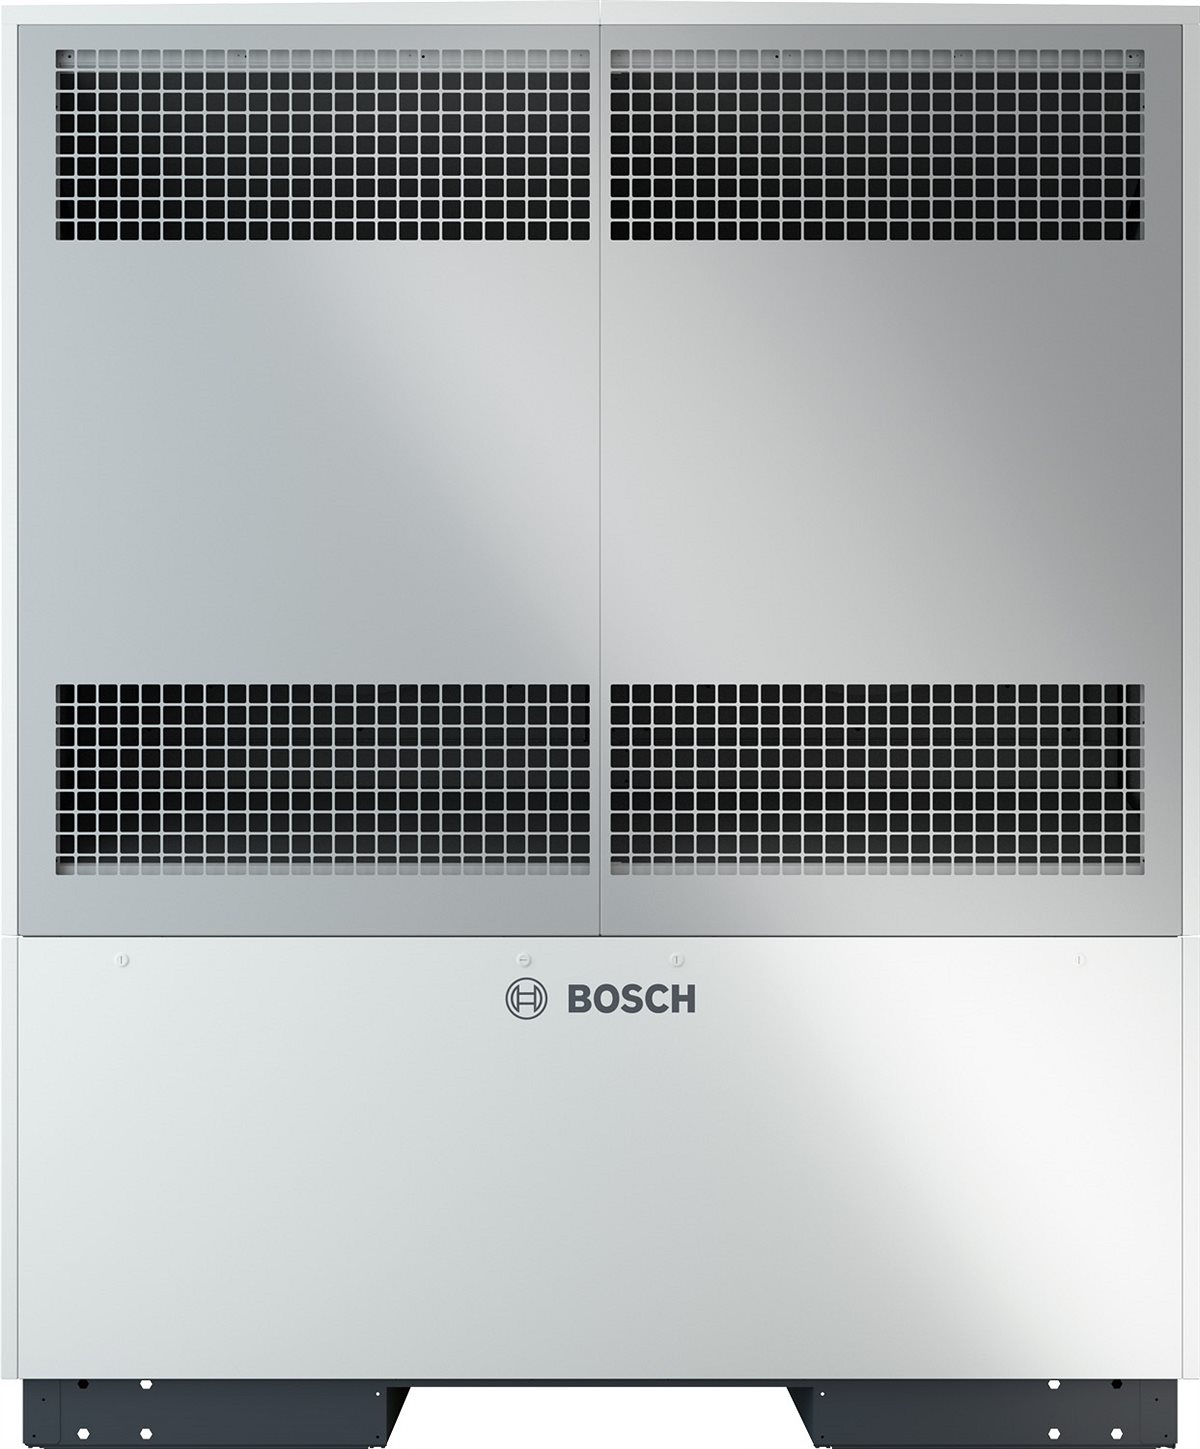 In der 38 kW-Ausführung zählt die neue Compress 5000 AW von Bosch zu den leistungsstärksten Wärmepumpen am Markt und eignet sich auch für die Nutzung in Mehrfamilienhäusern oder gewerblichen Gebäuden.